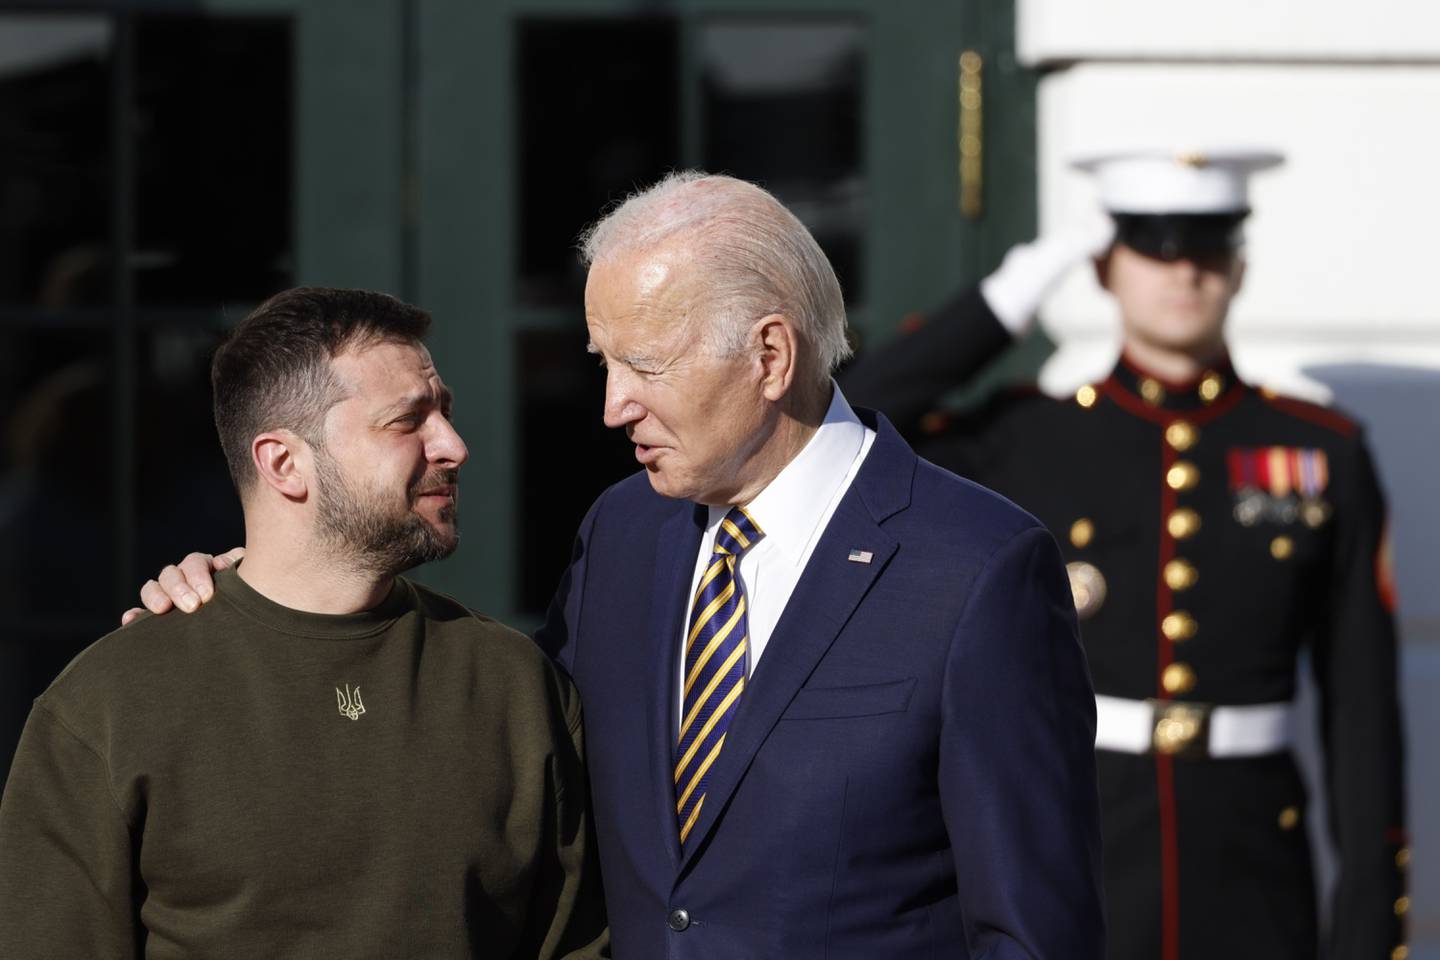 El presidente de Estados Unidos, Joe Biden, saluda a Volodymyr Zelenskiy, presidente de Ucrania, en el centro, fuera de la Casa Blanca en Washington, DC, EE.UU., el miércoles 21 de diciembre de 2022. Biden presentará una ayuda de casi 2.000 millones de dólares y anunciará la entrega de una batería de misiles Patriot para ayudar a Ucrania a reforzar sus defensas este invierno.